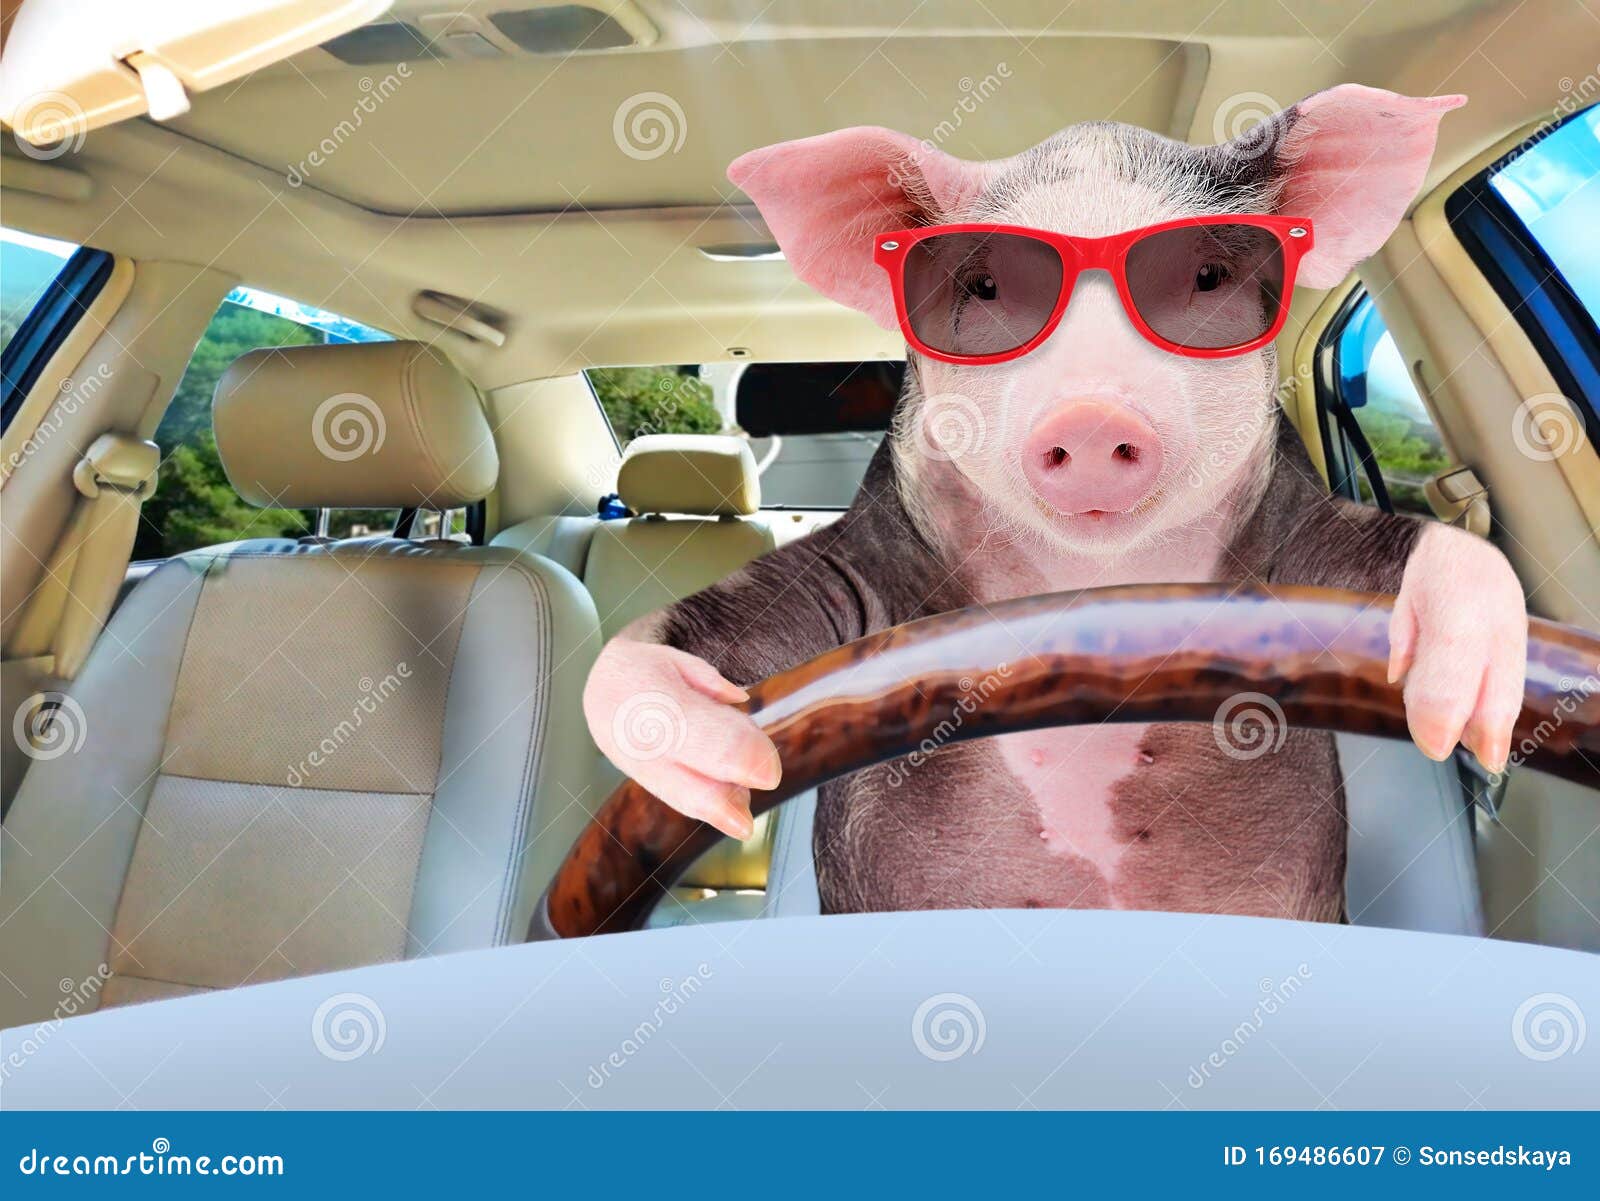 funny pig driving a car